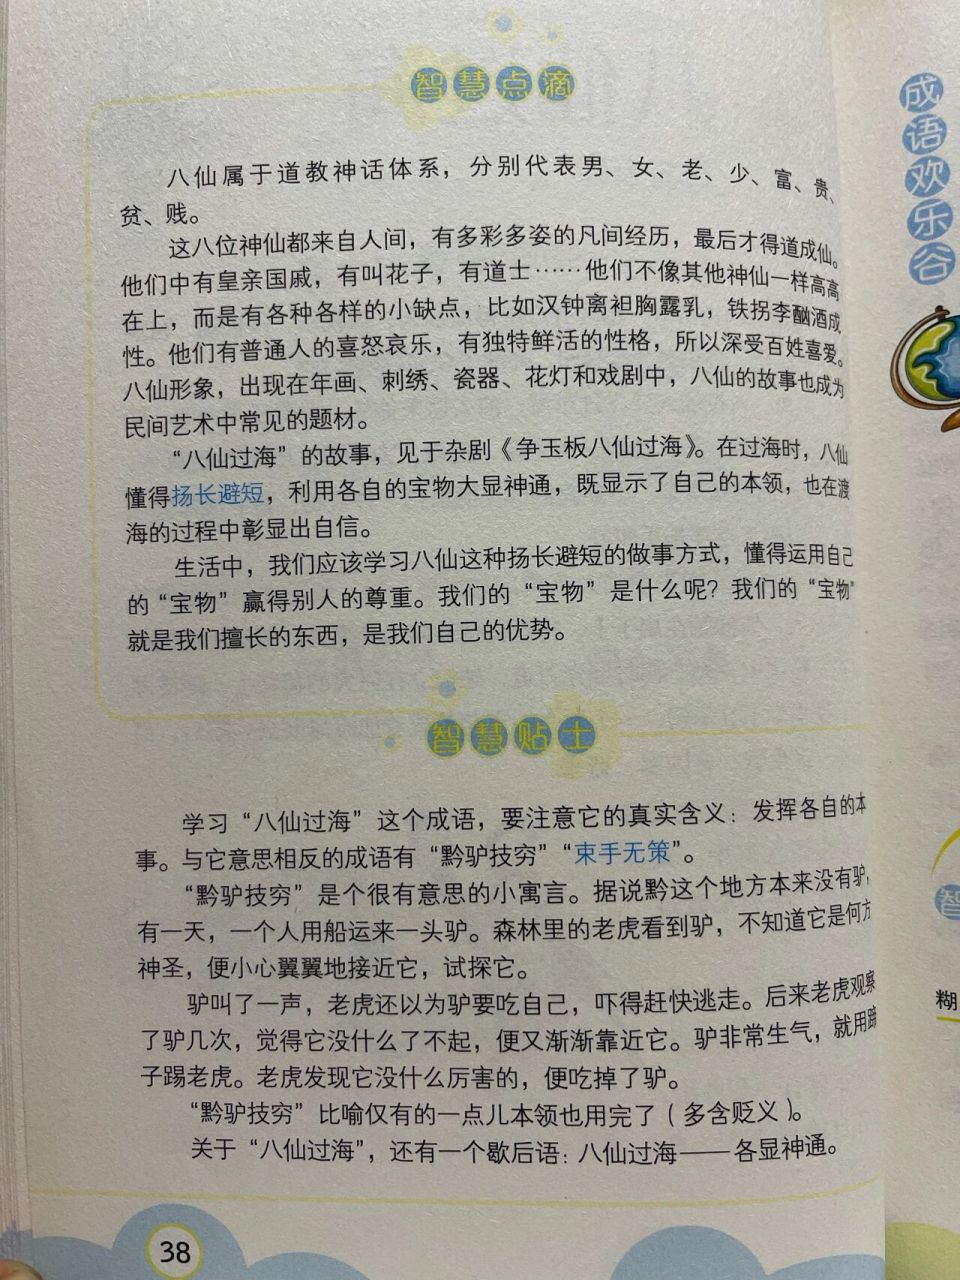 成语故事12《八仙过海》 八仙过海,是在中国民间流传最广的神话传说之